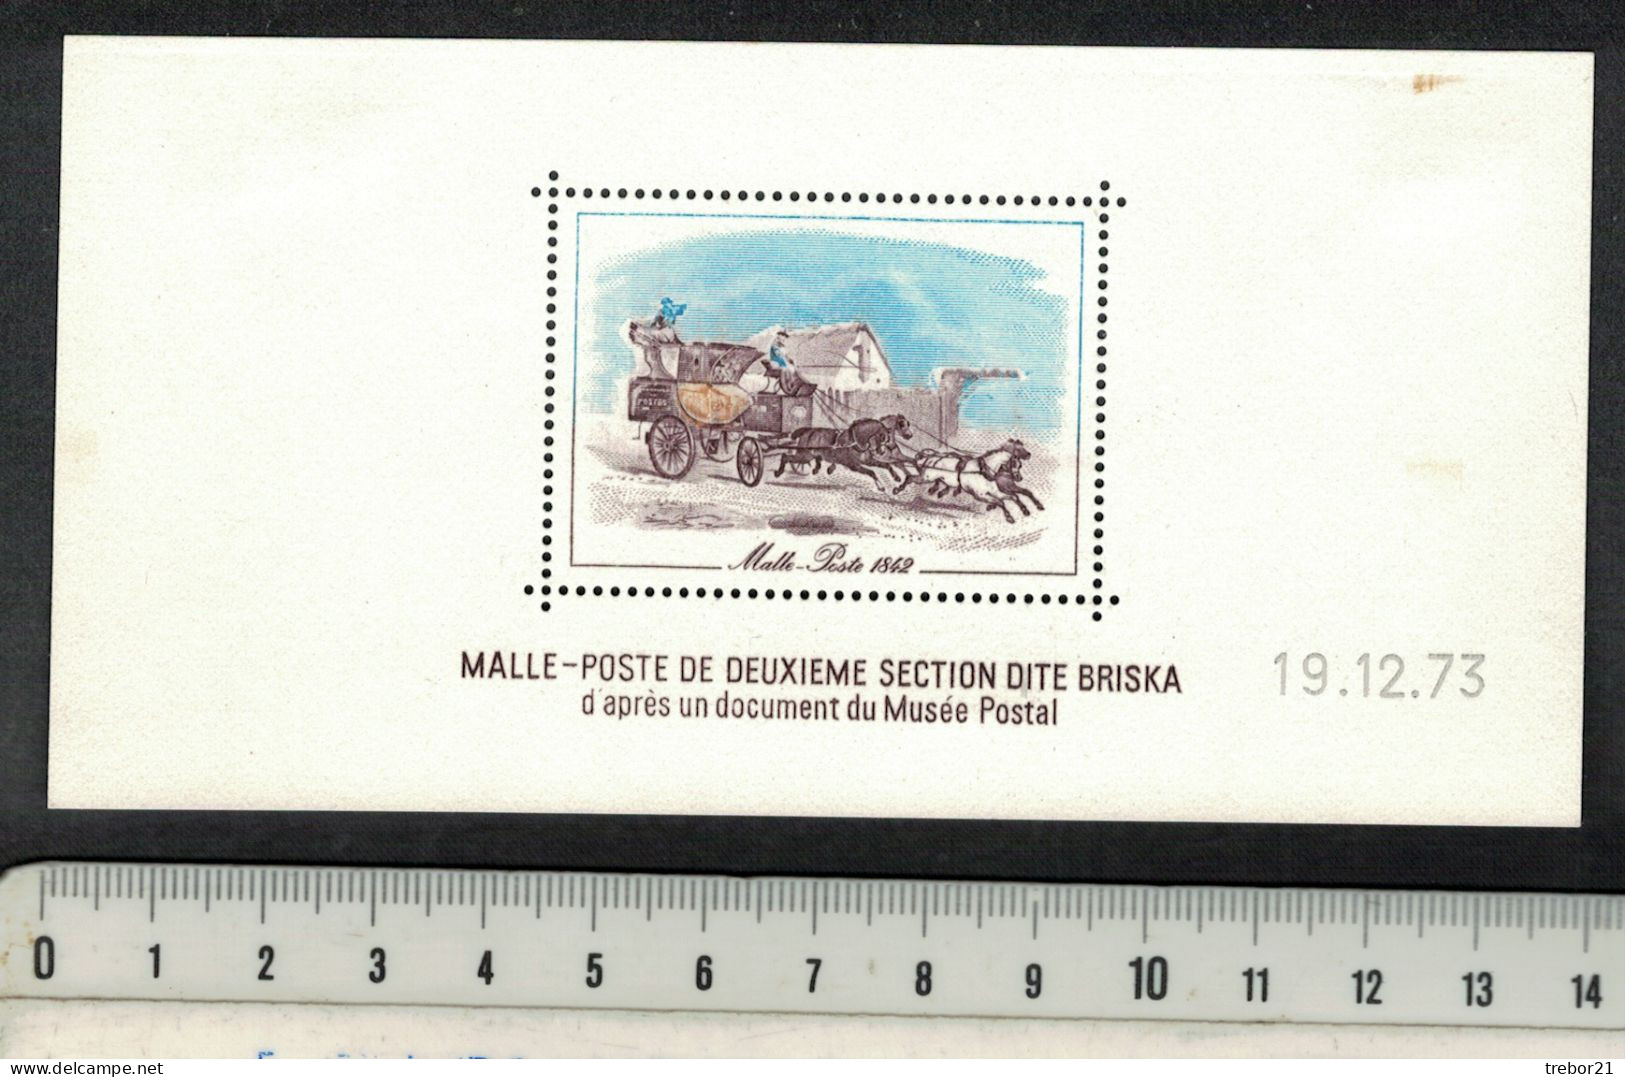 Malle Poste - Briskac - Bloc LA POSTE 1973 - Diligences